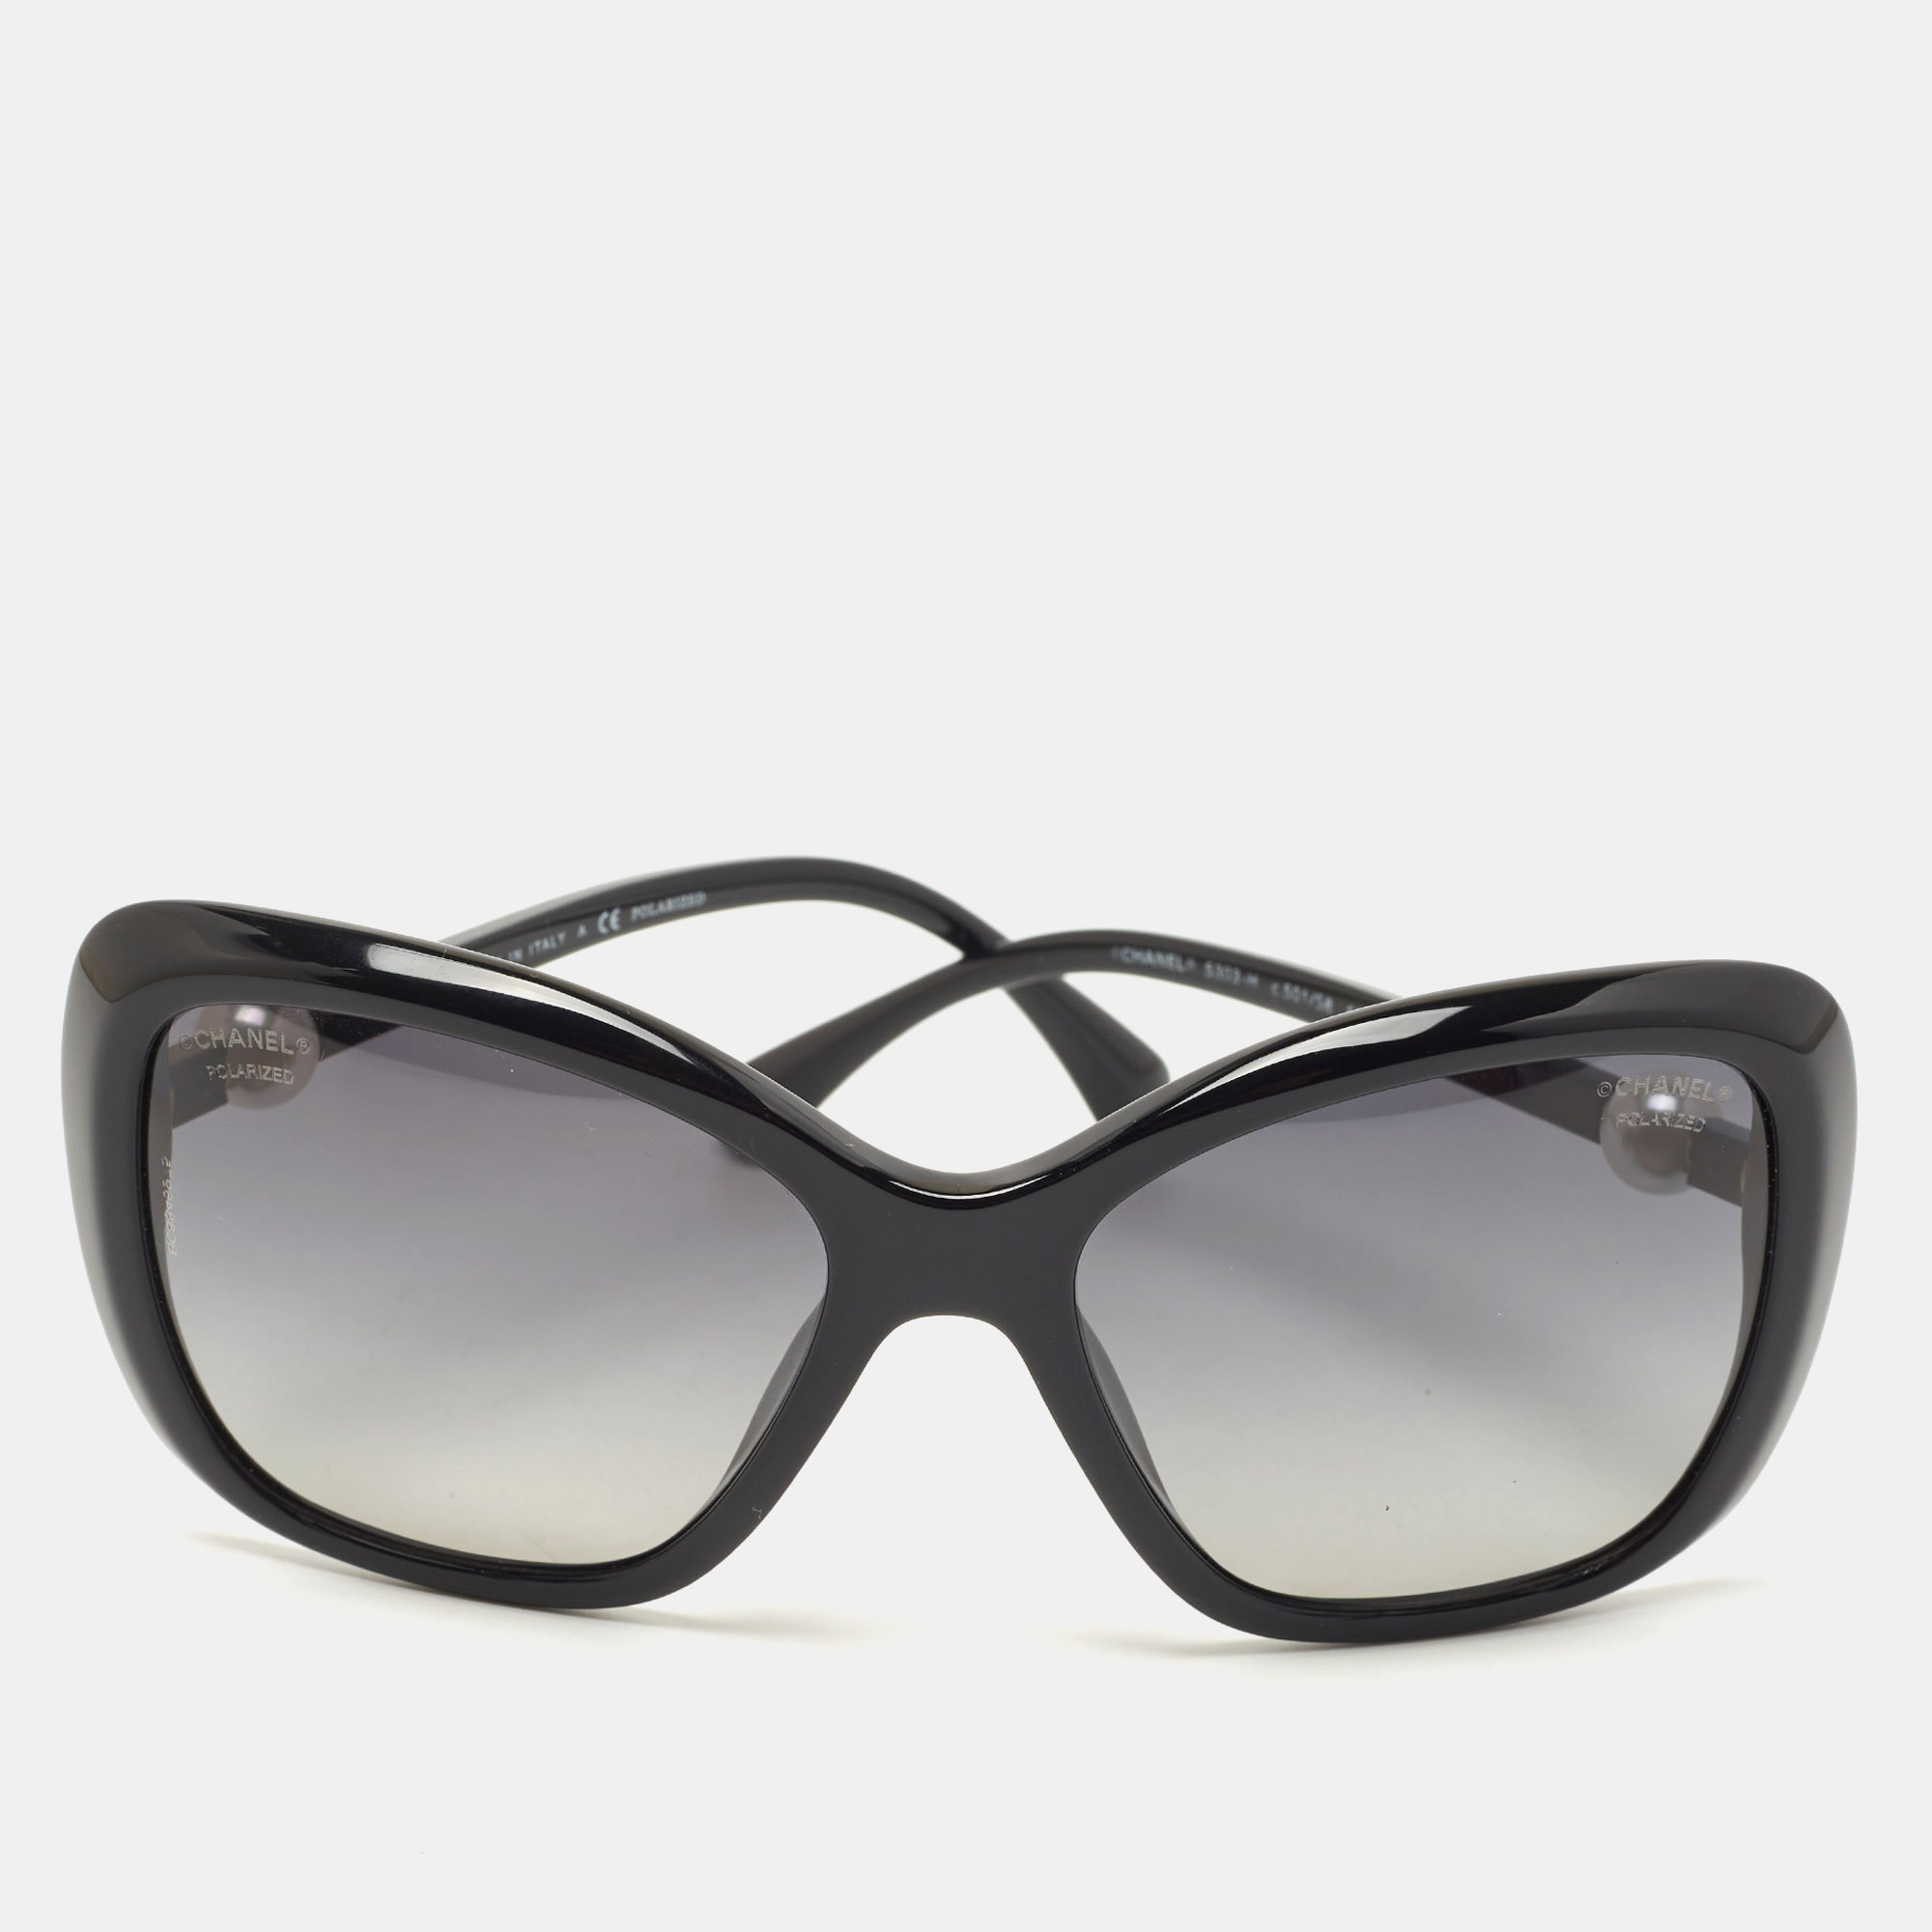 Chanel Interlocking CC Logo Square Sunglasses - Black Sunglasses,  Accessories - CHA938259